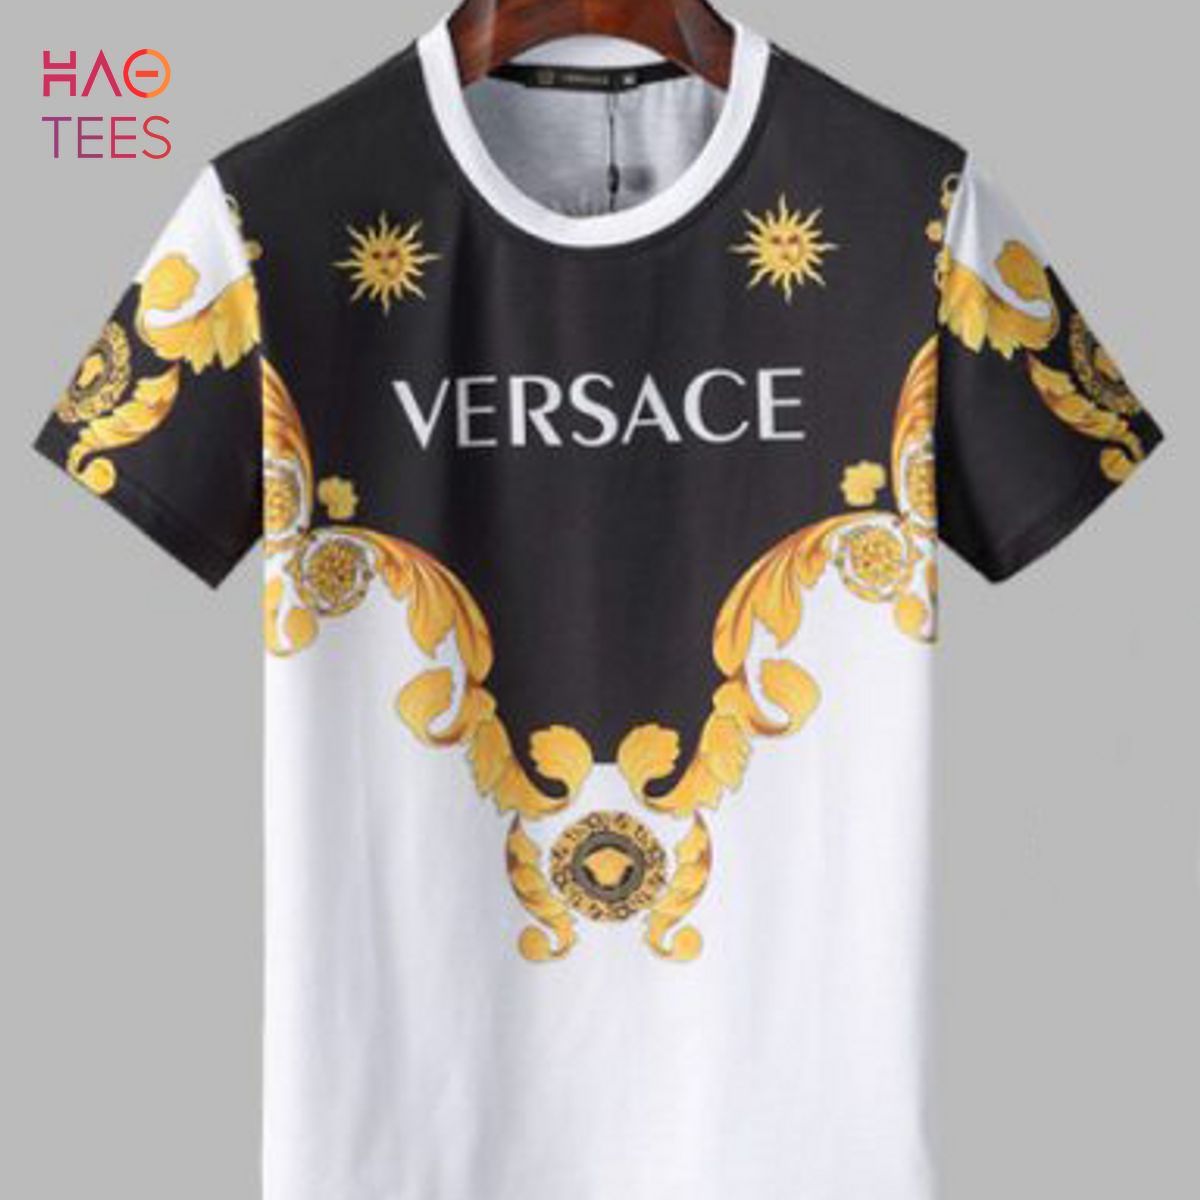 Designer Style T-Shirt Herren Shirt Verso Gold Weiß Schwarz Mode Streetwear